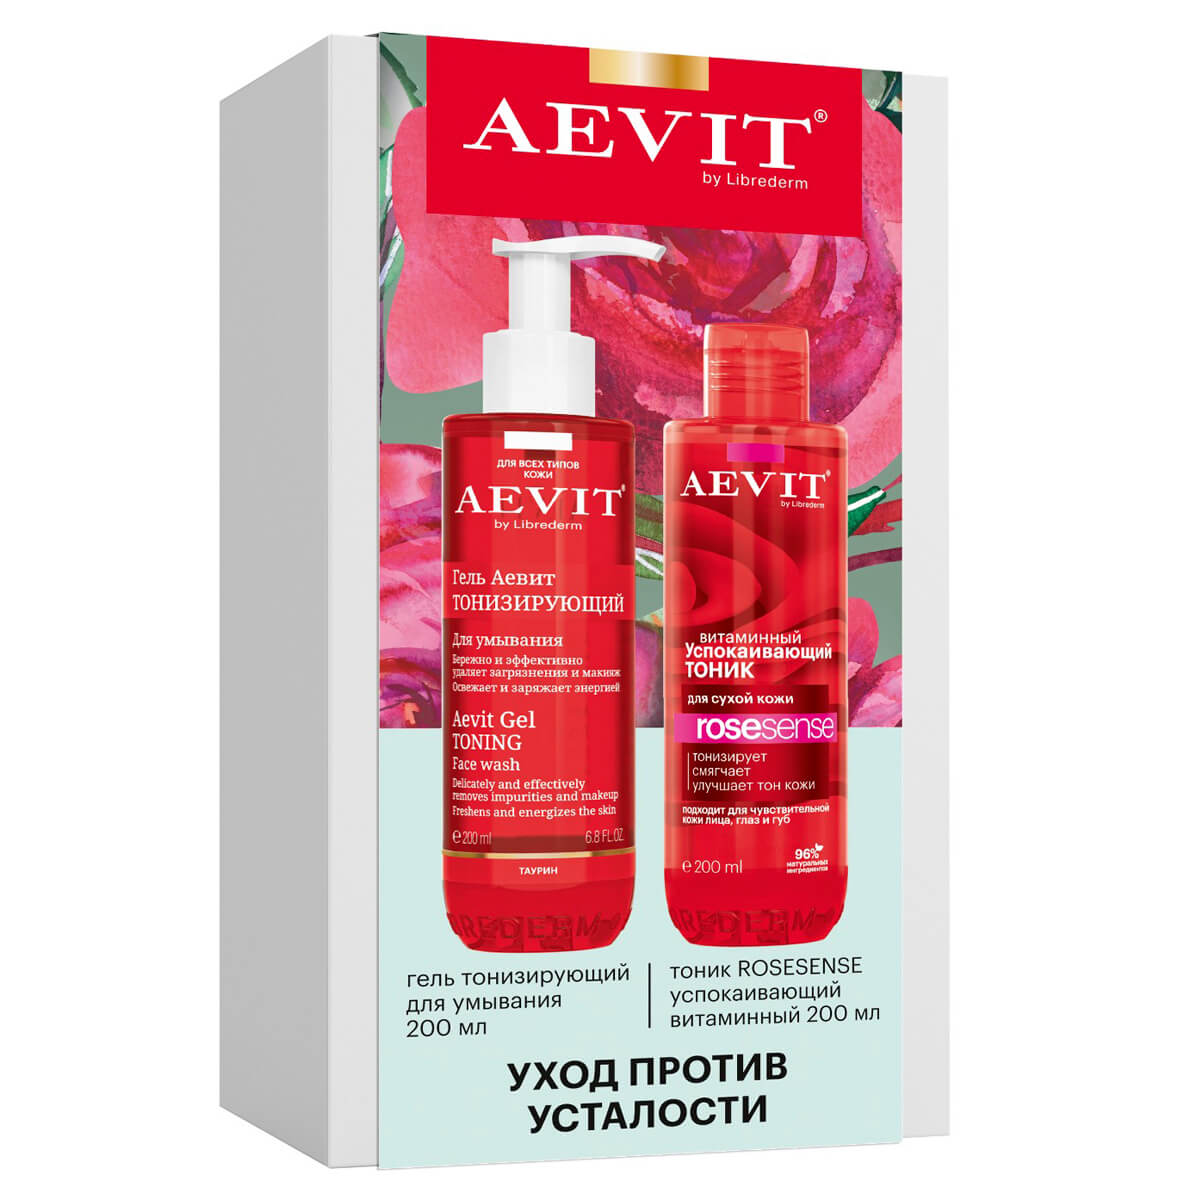 Набор подарочный AEVIT Уход Против усталости кожи лица (2 продукта), Librederm